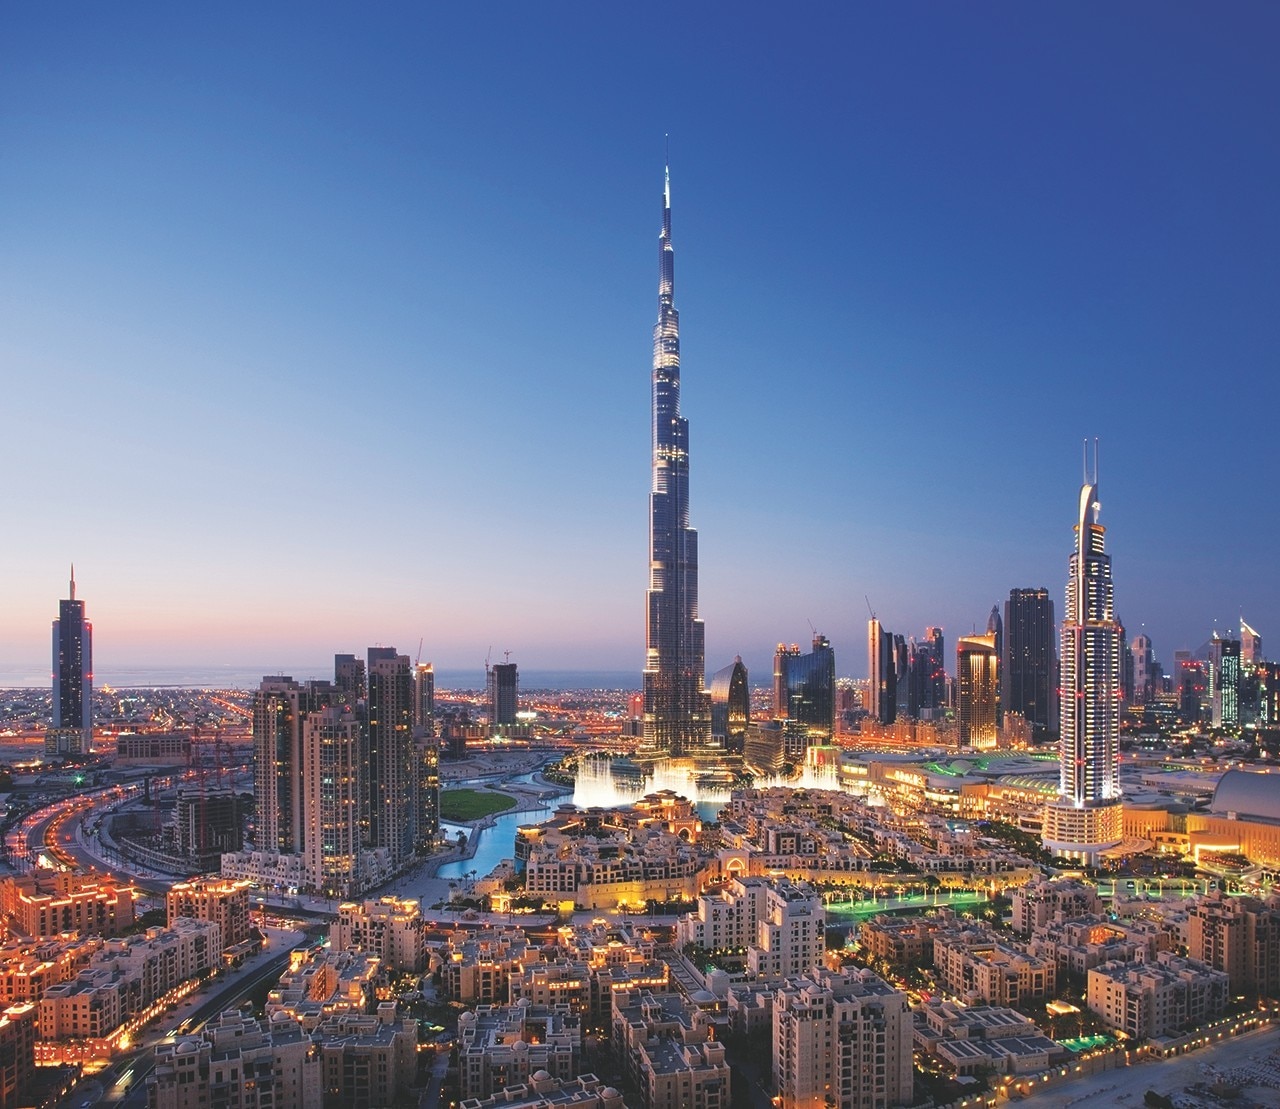 Burj Khalifa, the word's tallest tower in Dubai designed by SOM - Domus